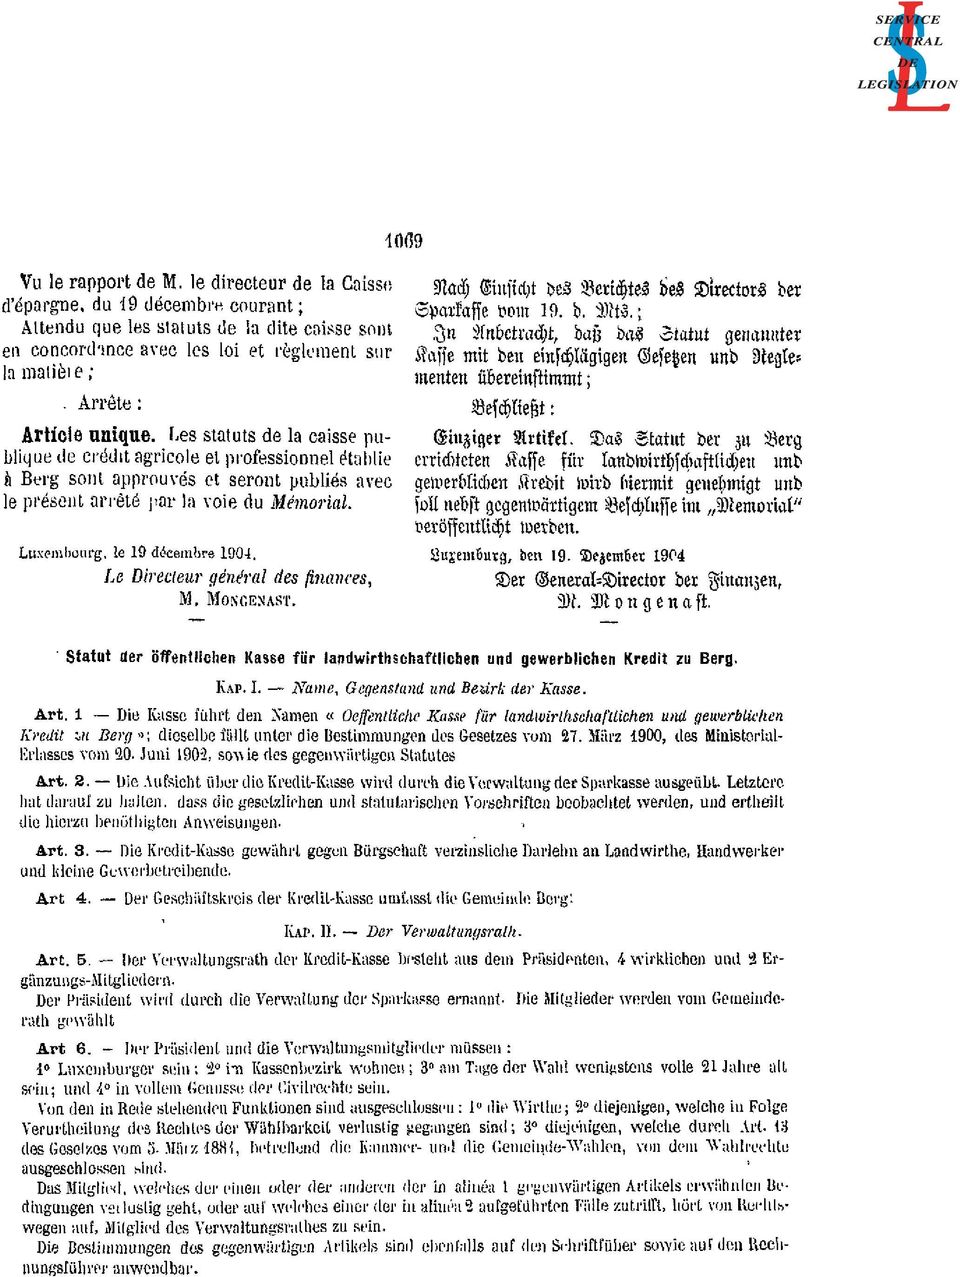 Les statuts de la caisse publique de crédit agricole et professionnel établie à Berg sont approuvés et seront publiés avec le présent arrêté par la voie du Mémorial. Luxembourg, le 9 décembre 904.